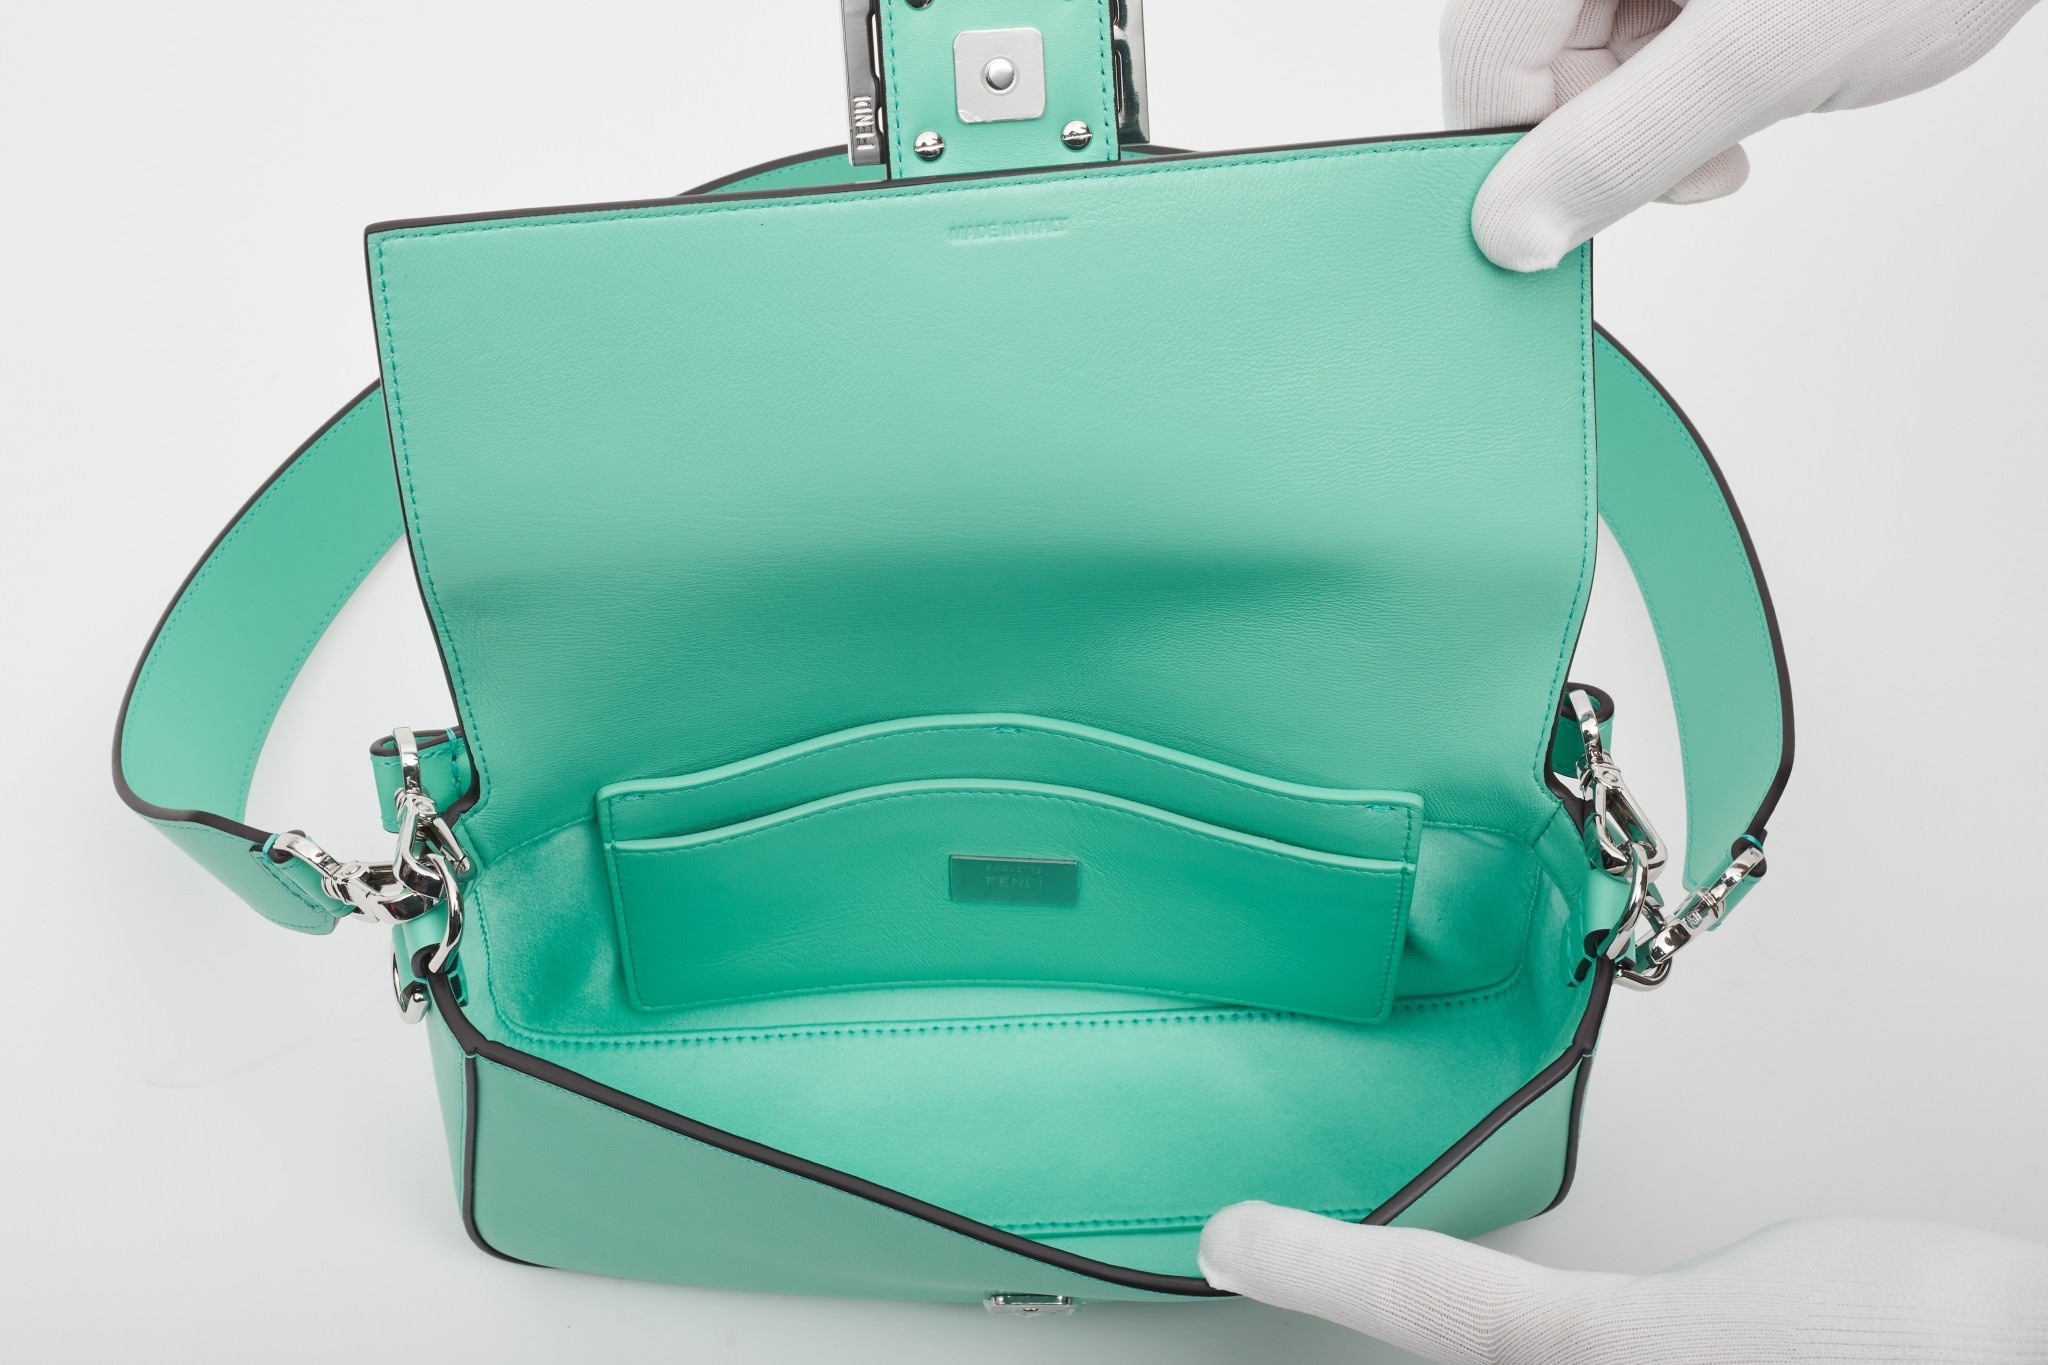 Fendi x Tiffany & Co. Baguette Bag Tiffany Blue